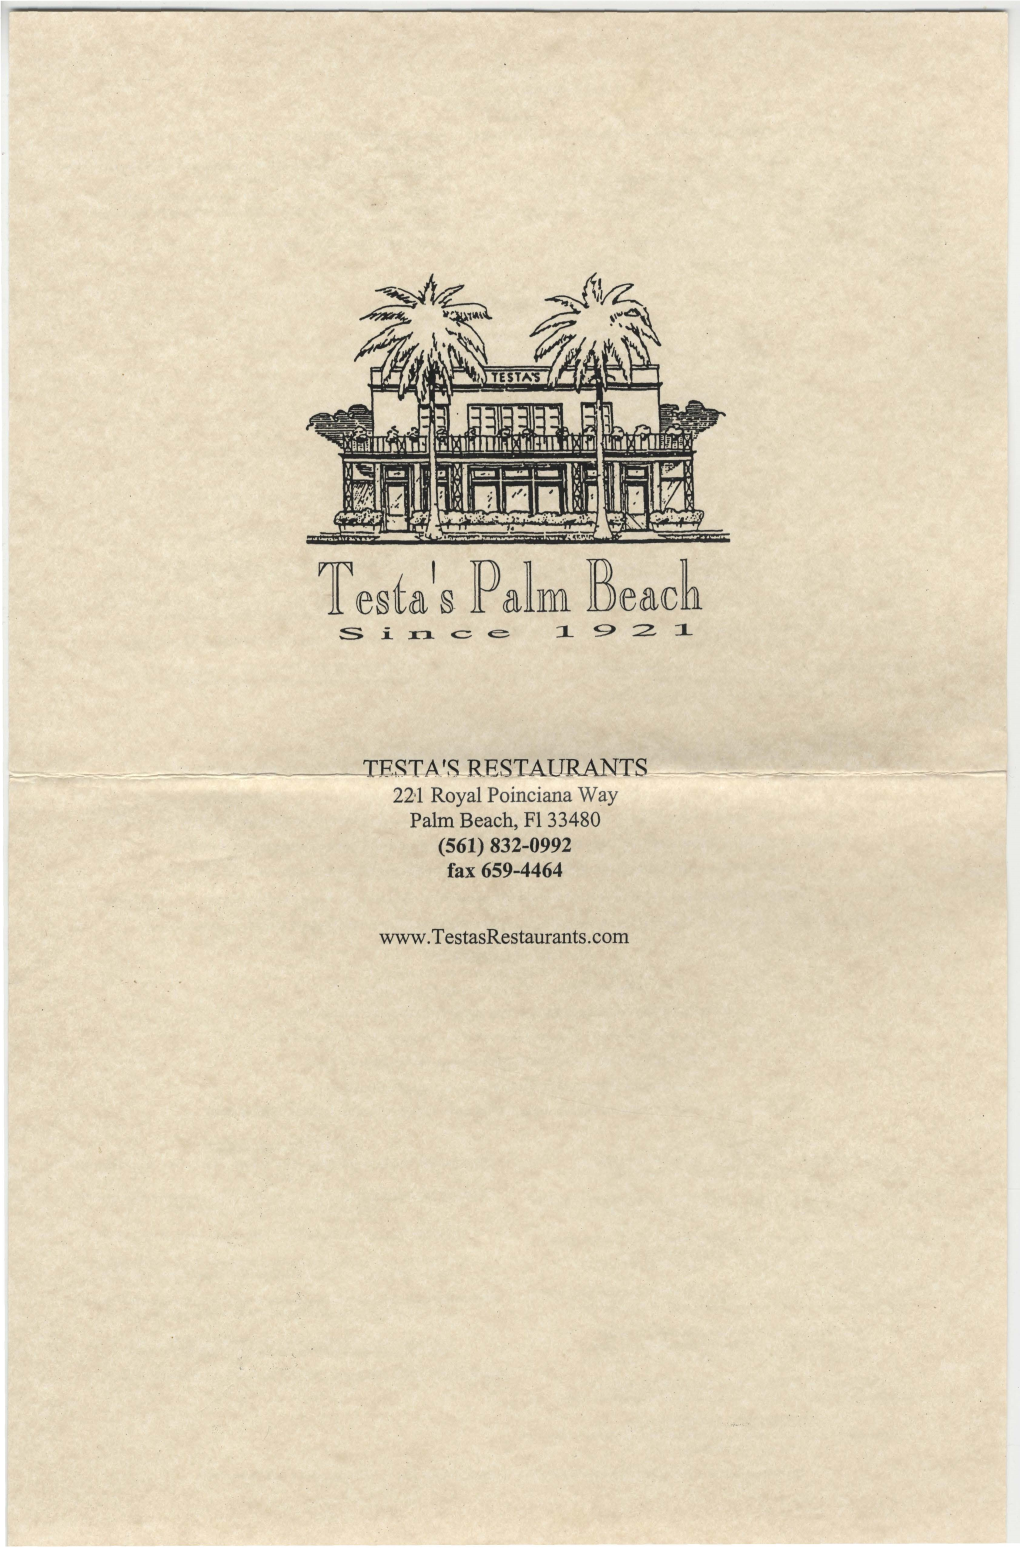 Testa's Palm Beach